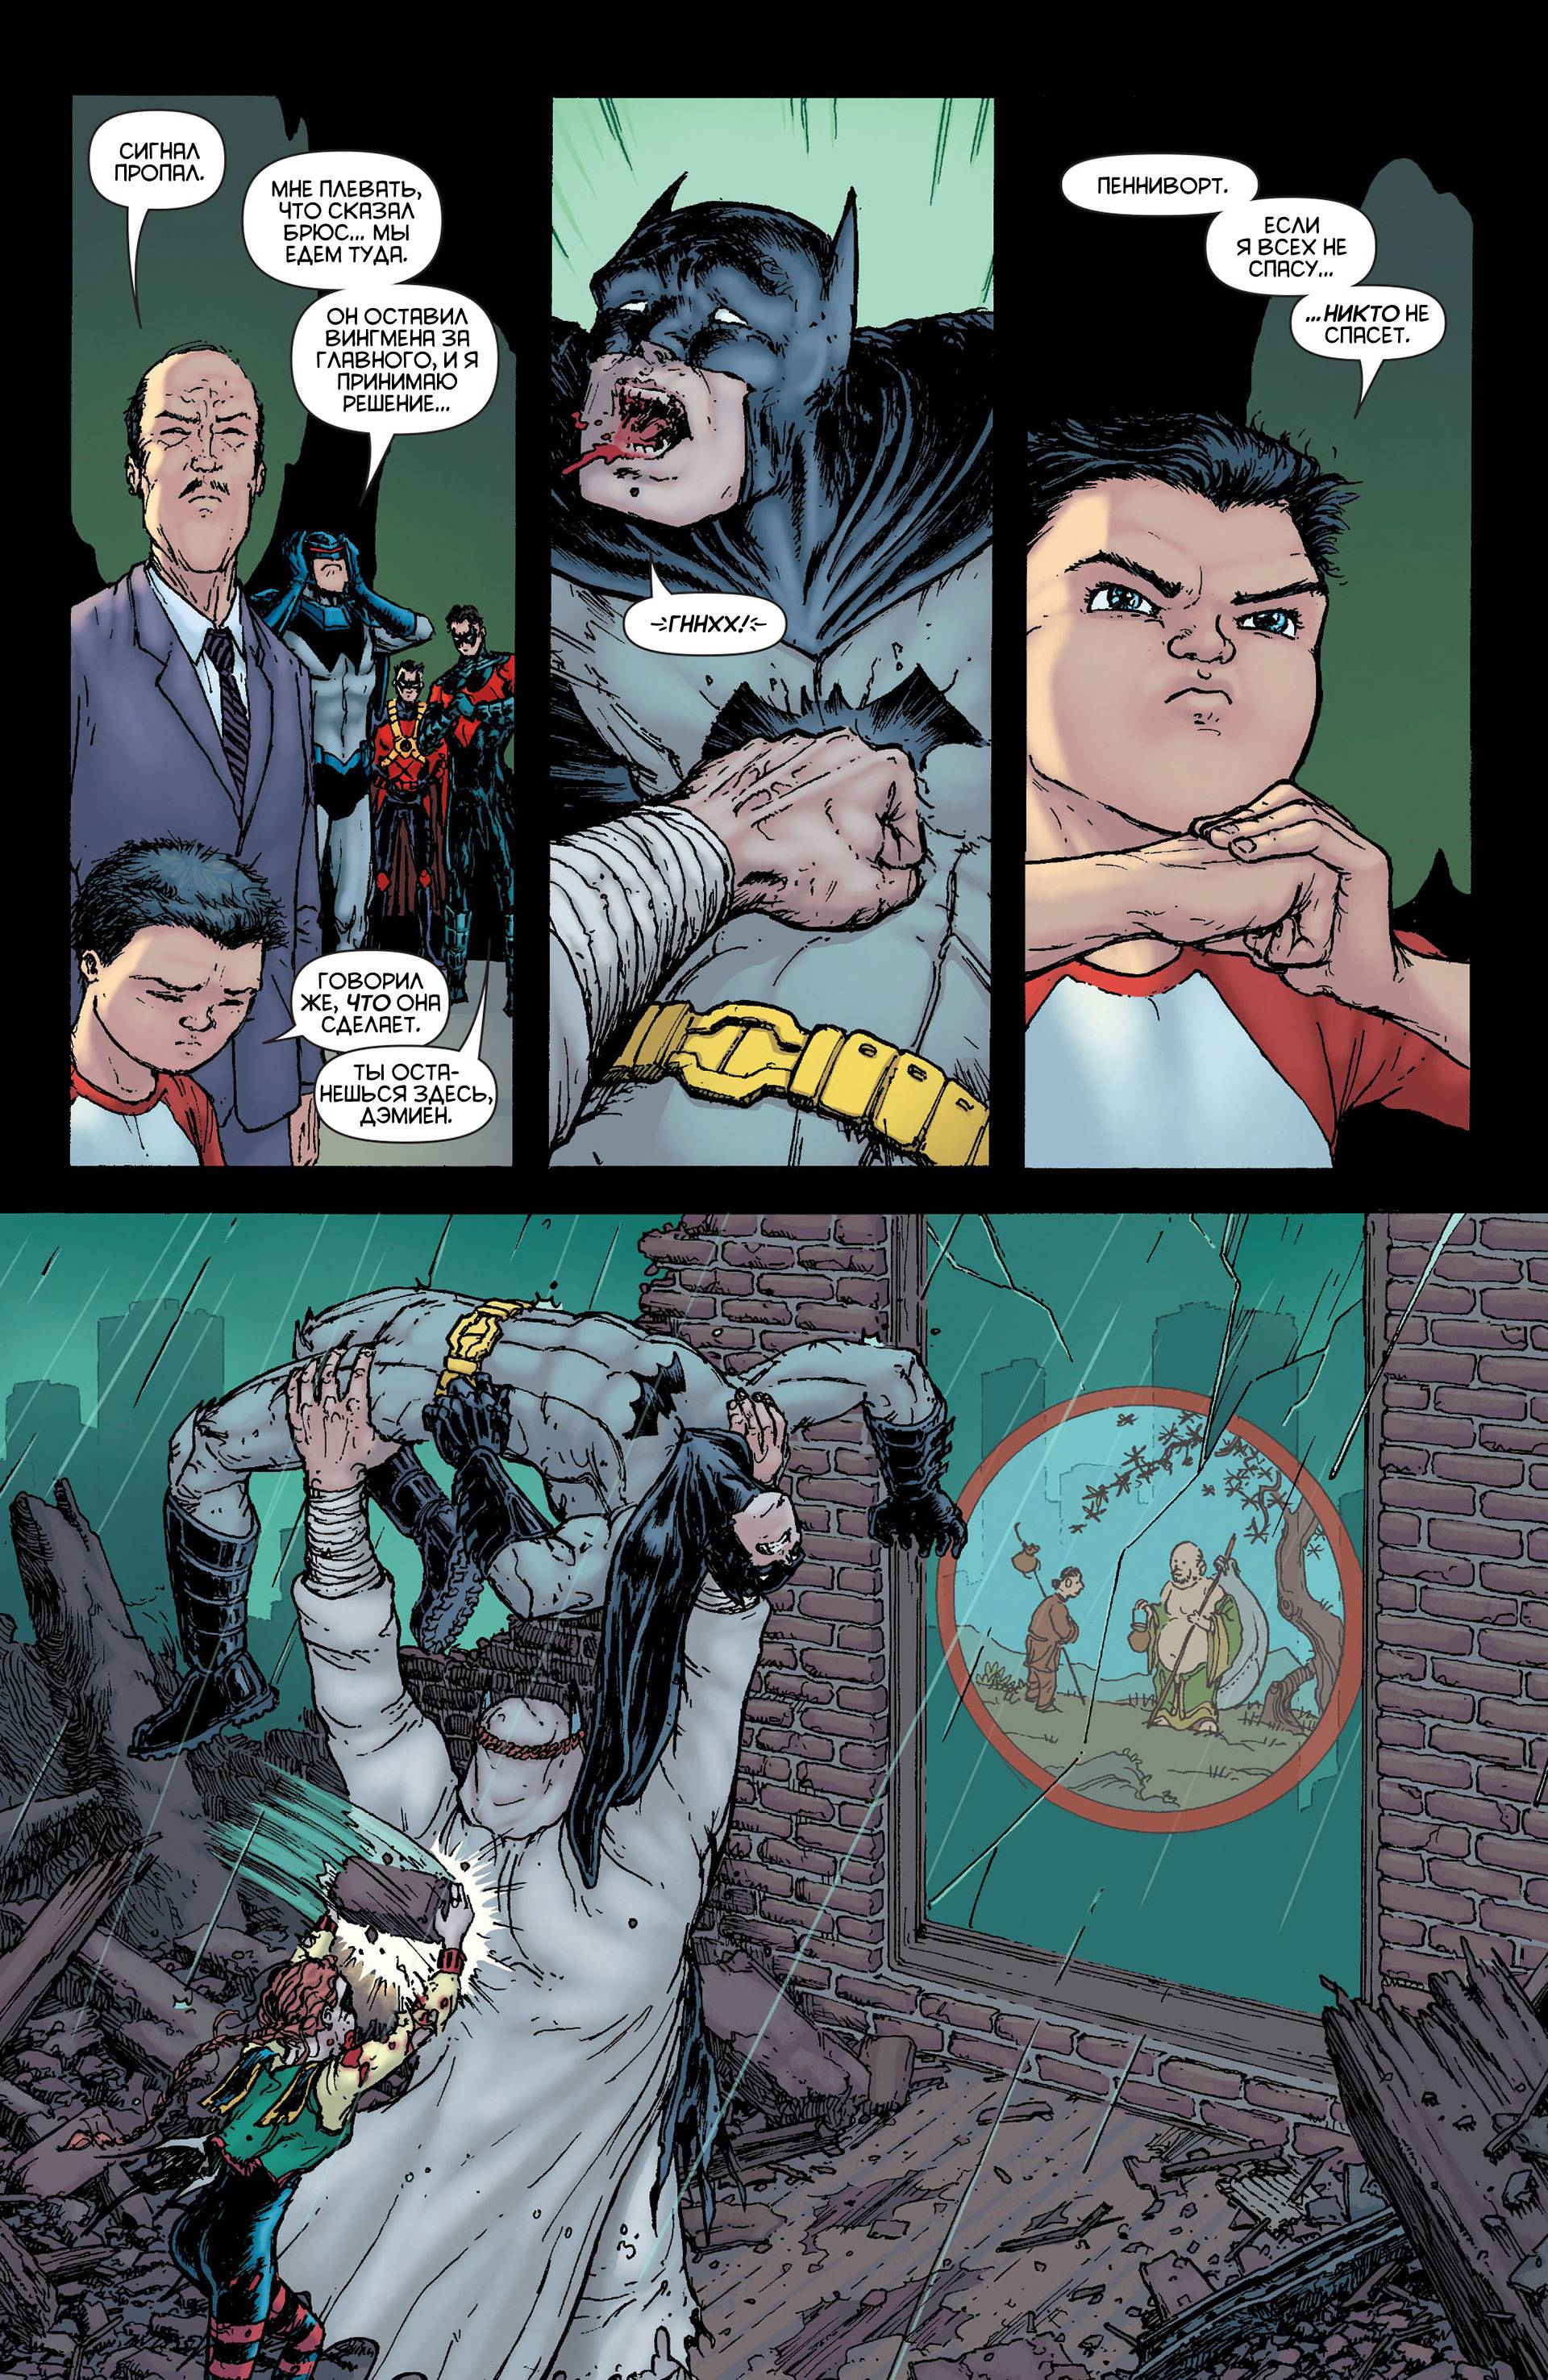 Бэтмен Корпорация №6 онлайн